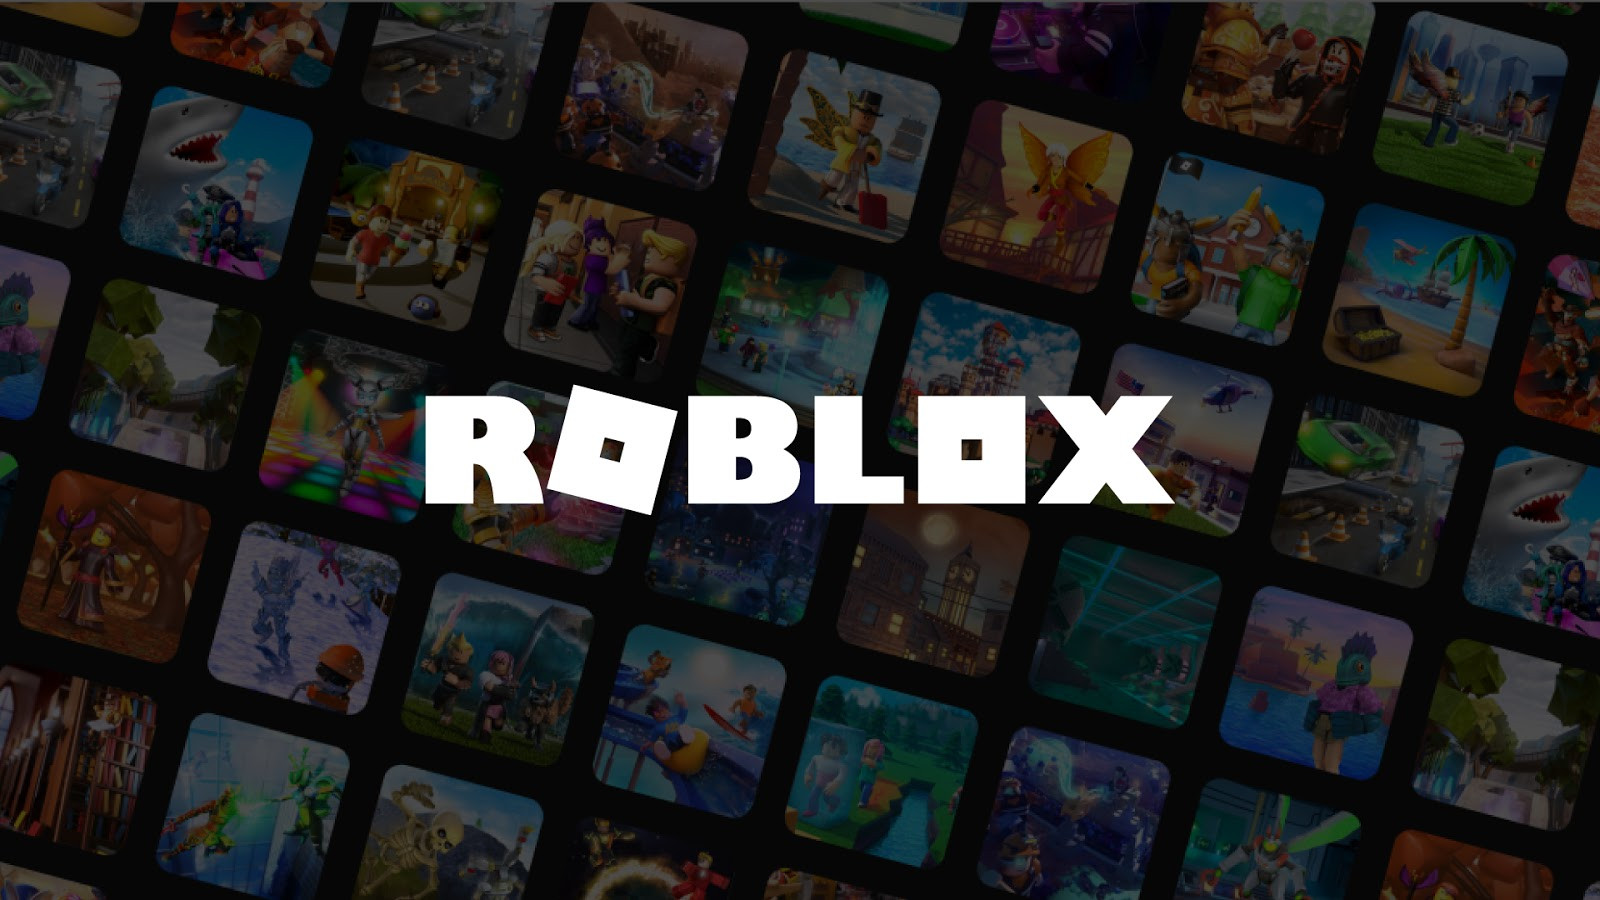 Jugar Roblox Sin Descargar - roblox juega gratis sin descargar